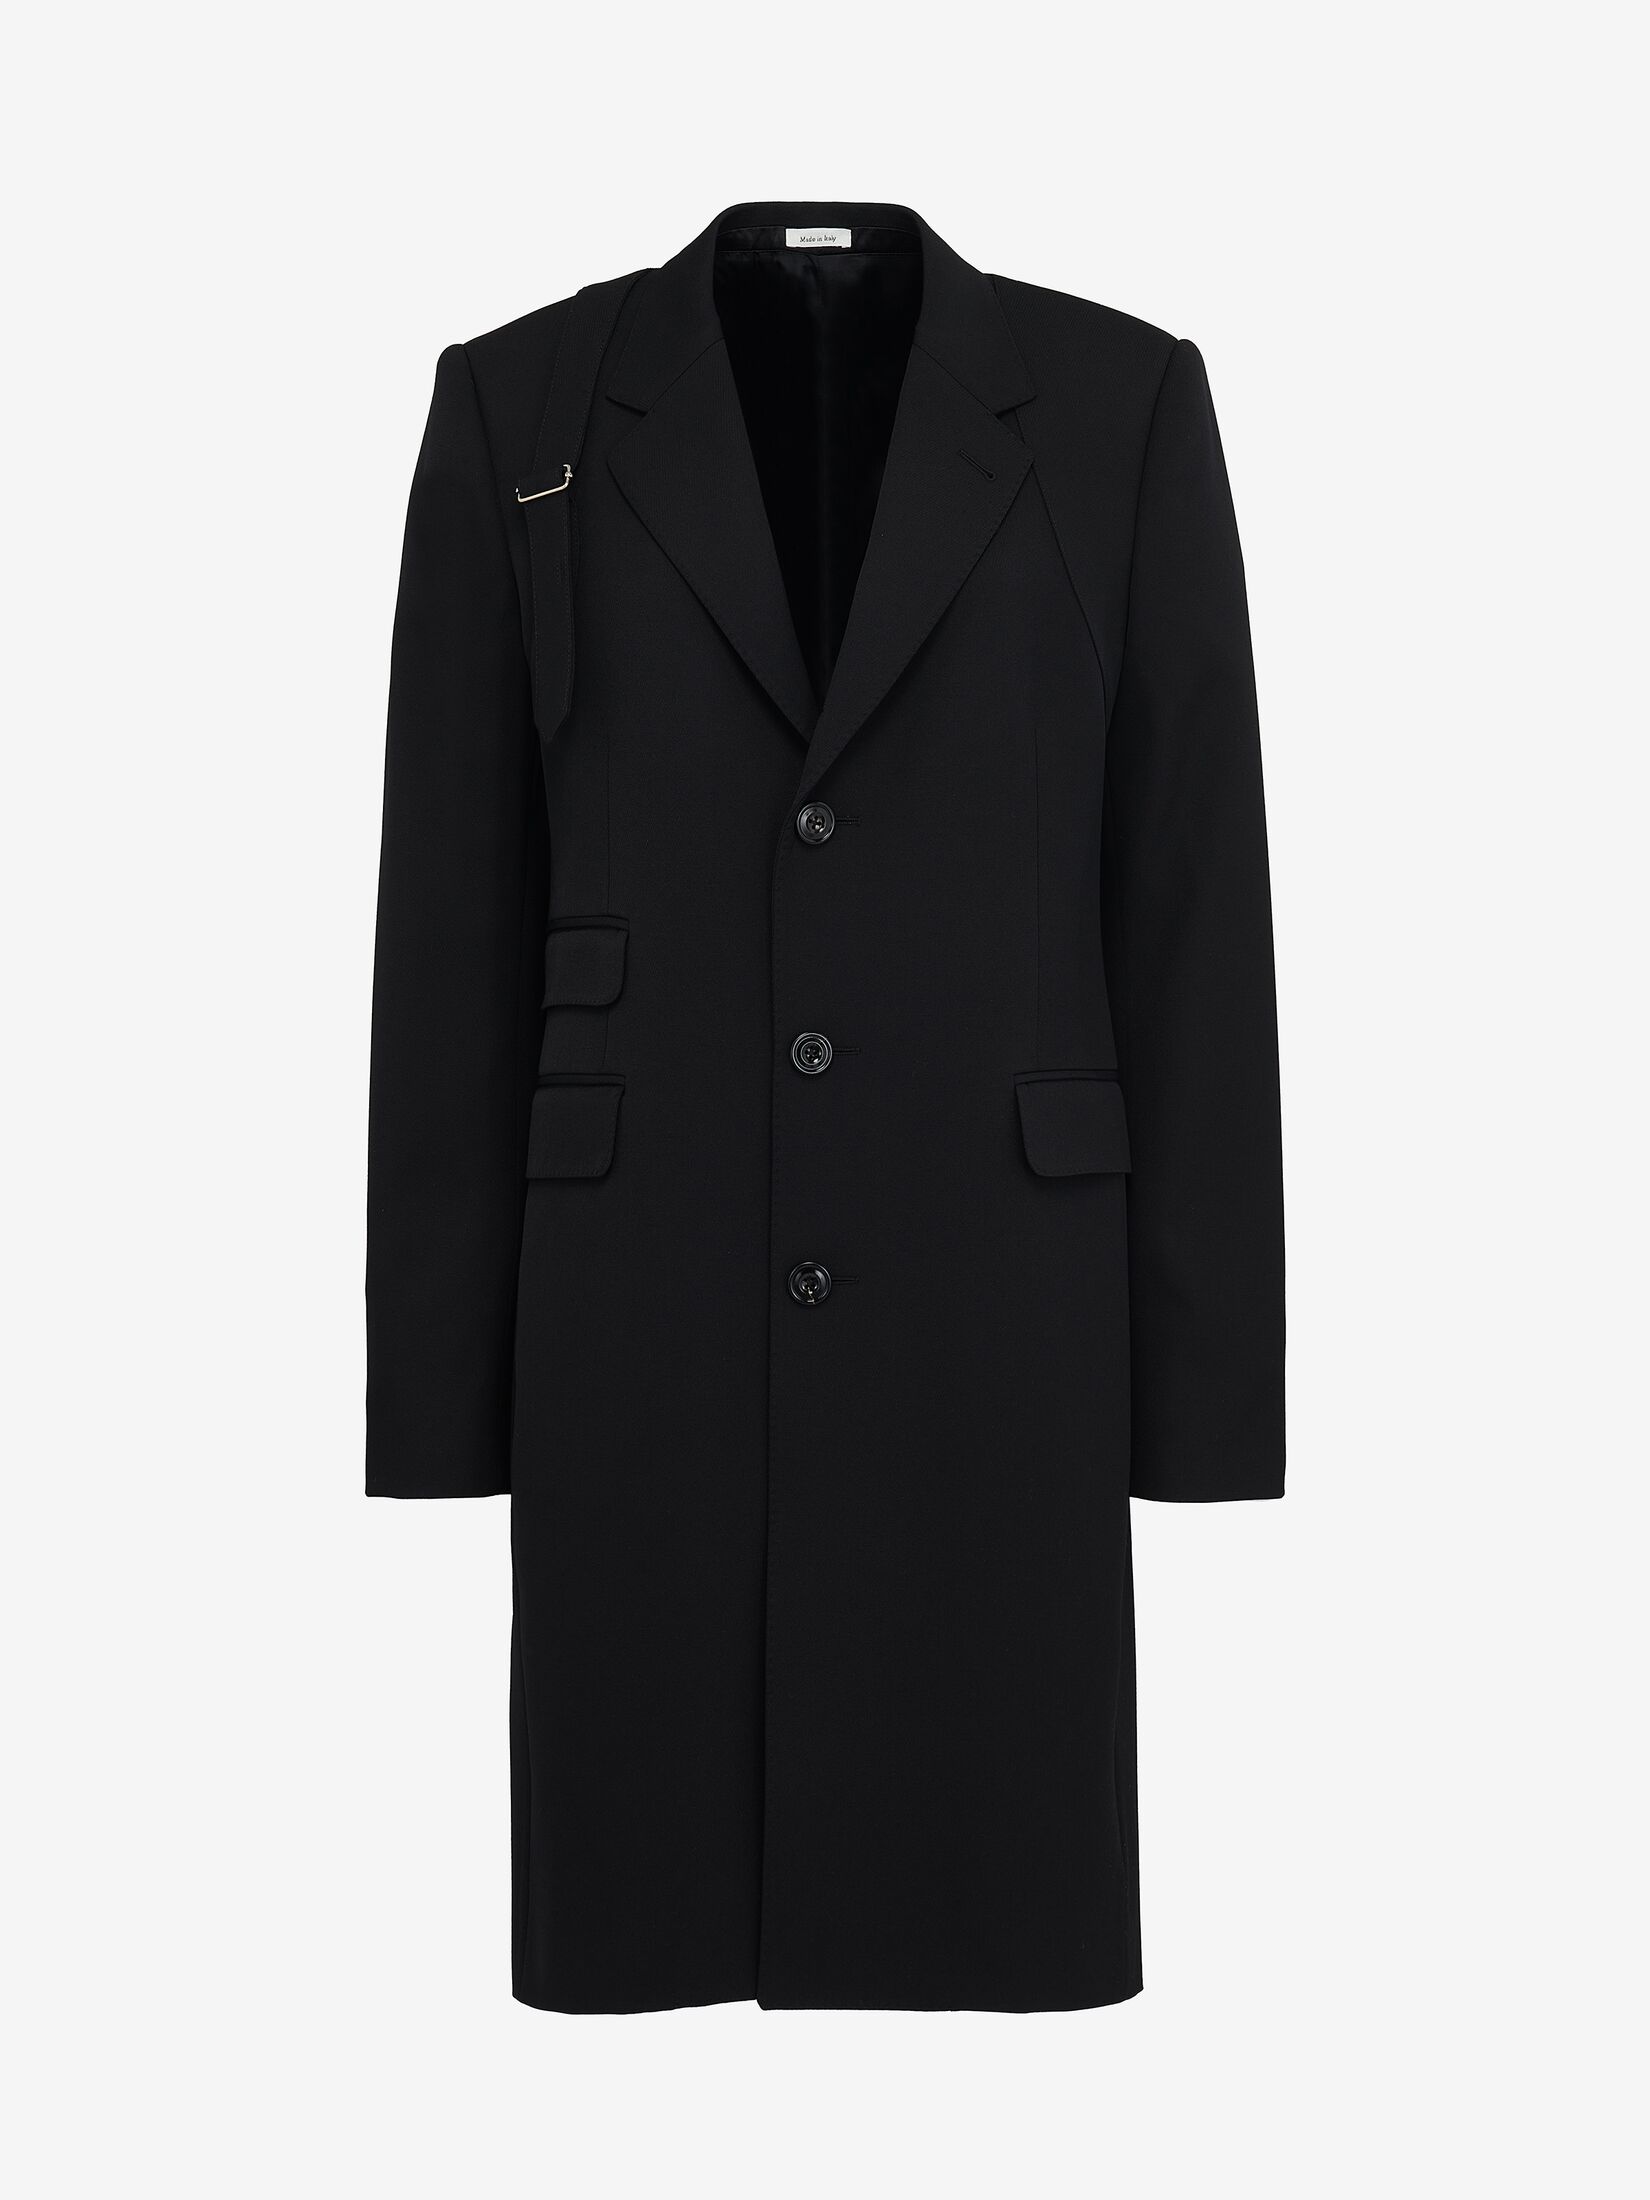 McQueen Harness Coat